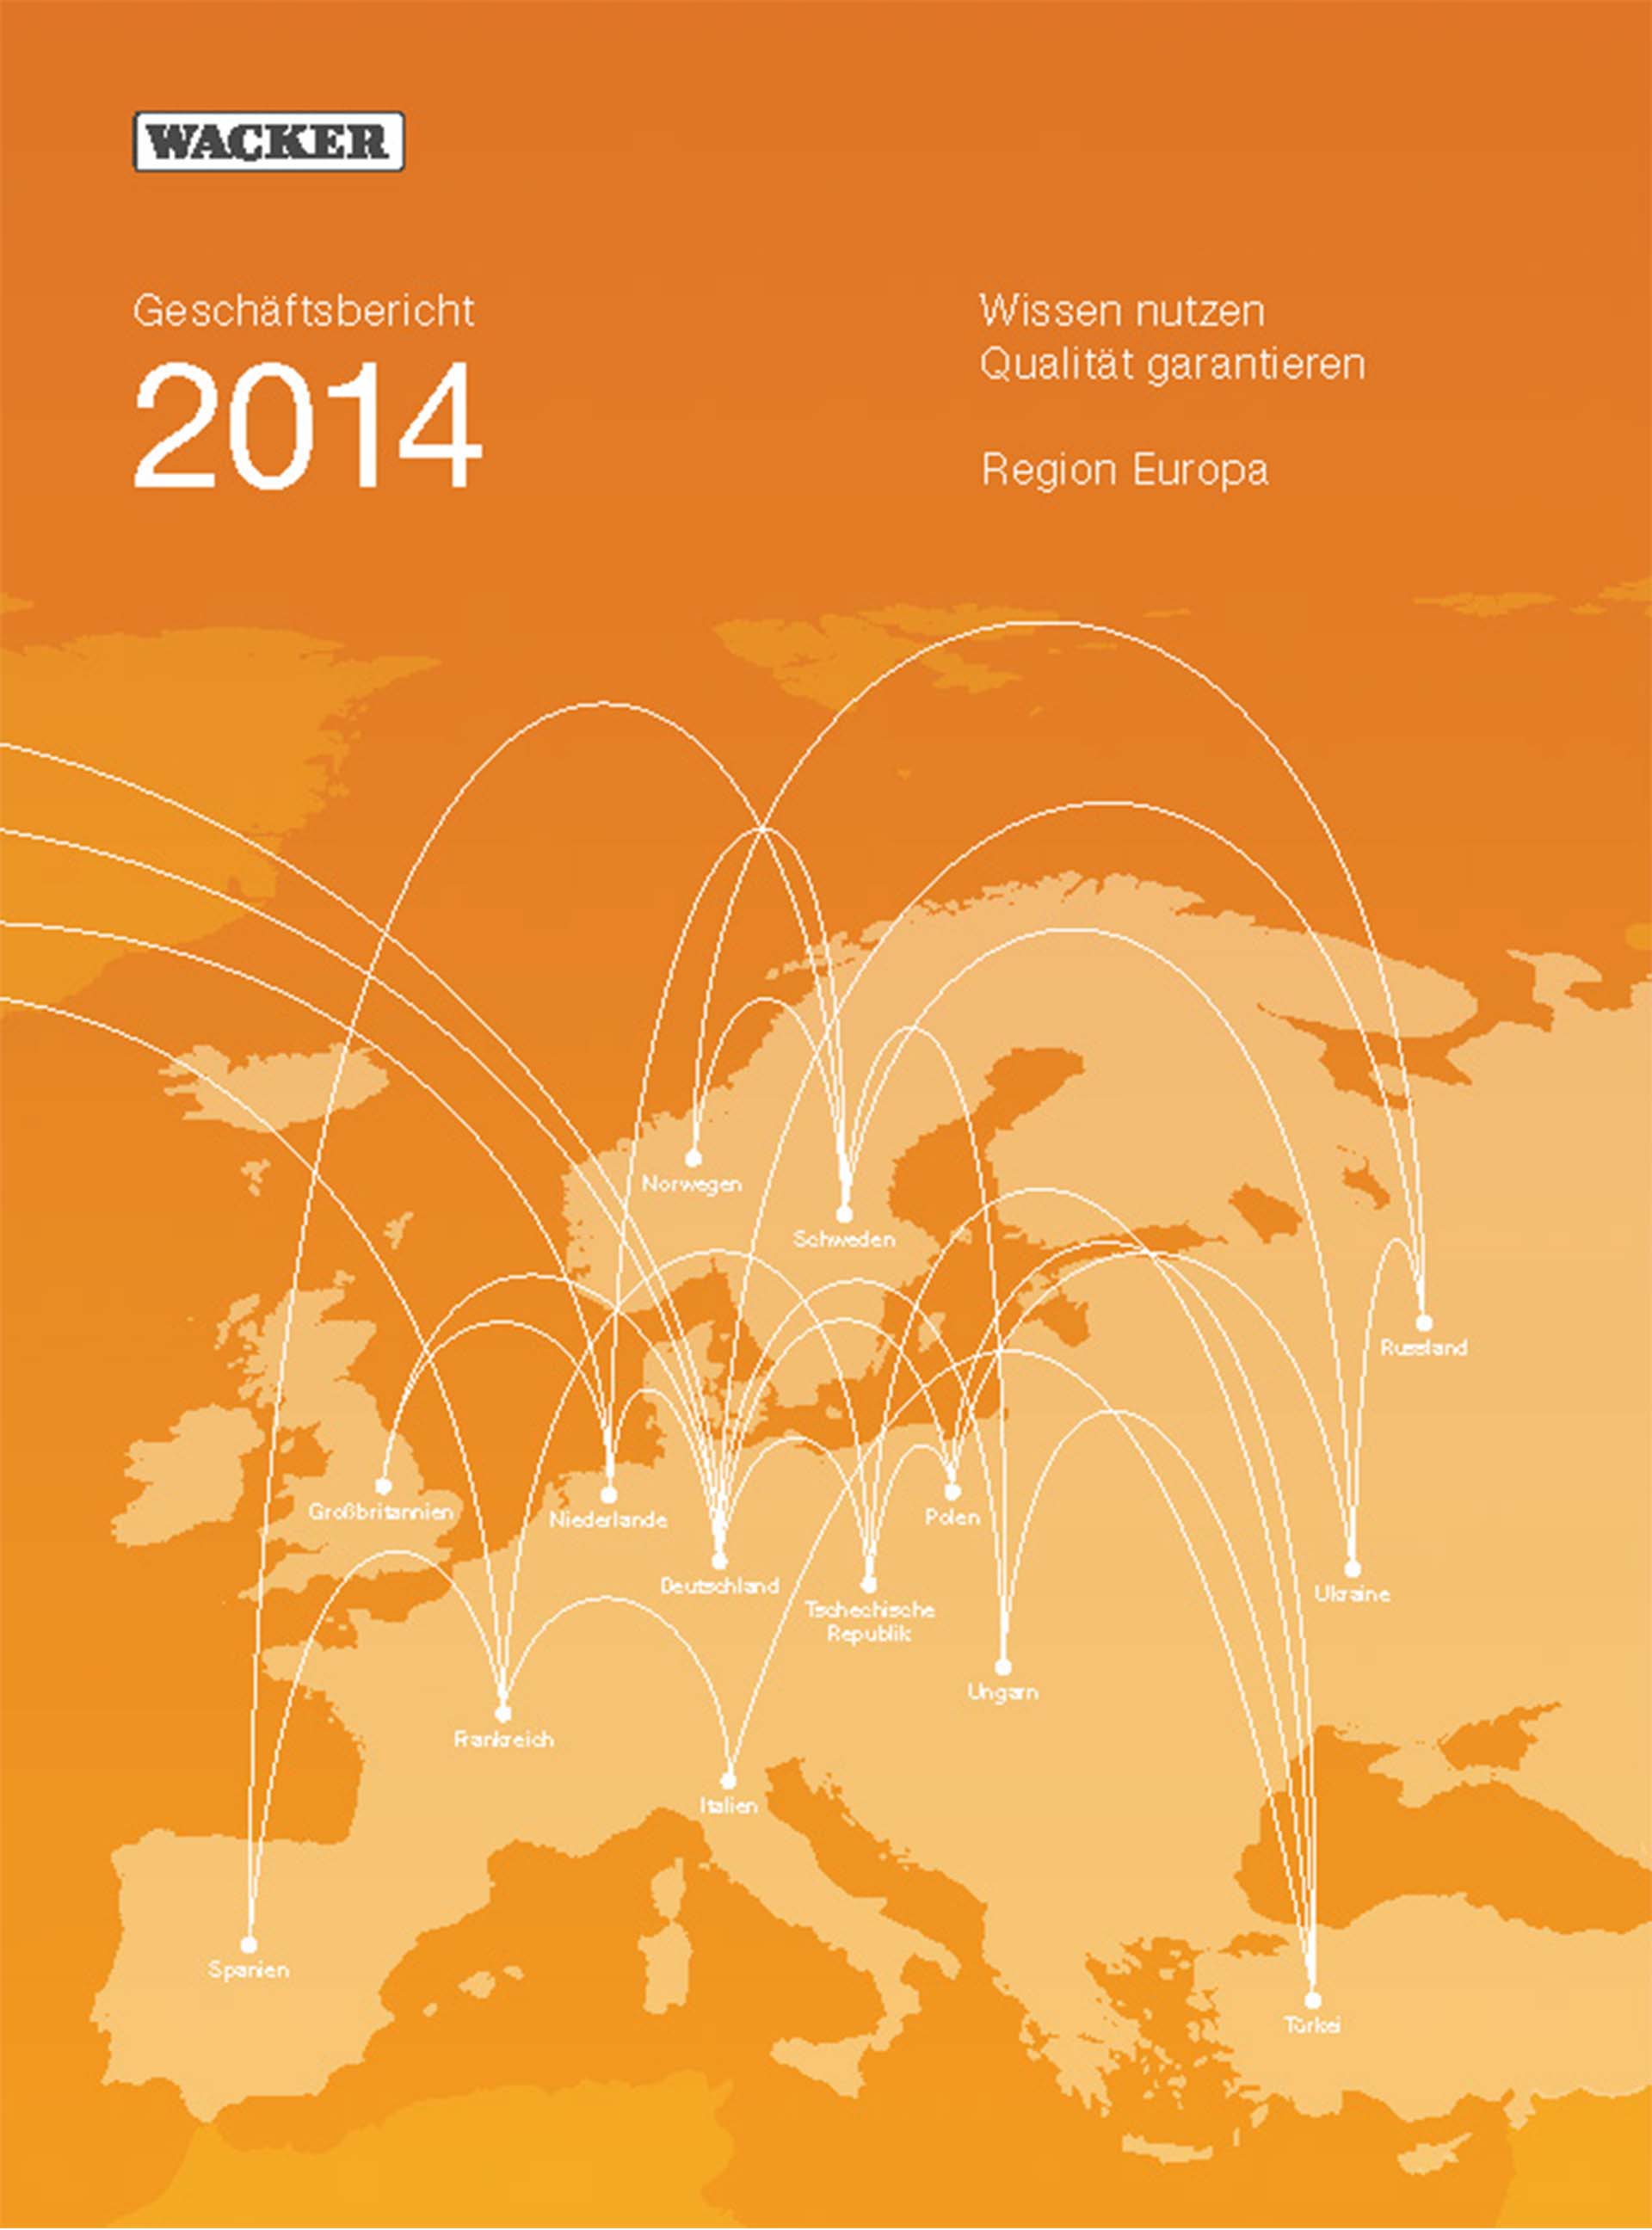 2014年度报告